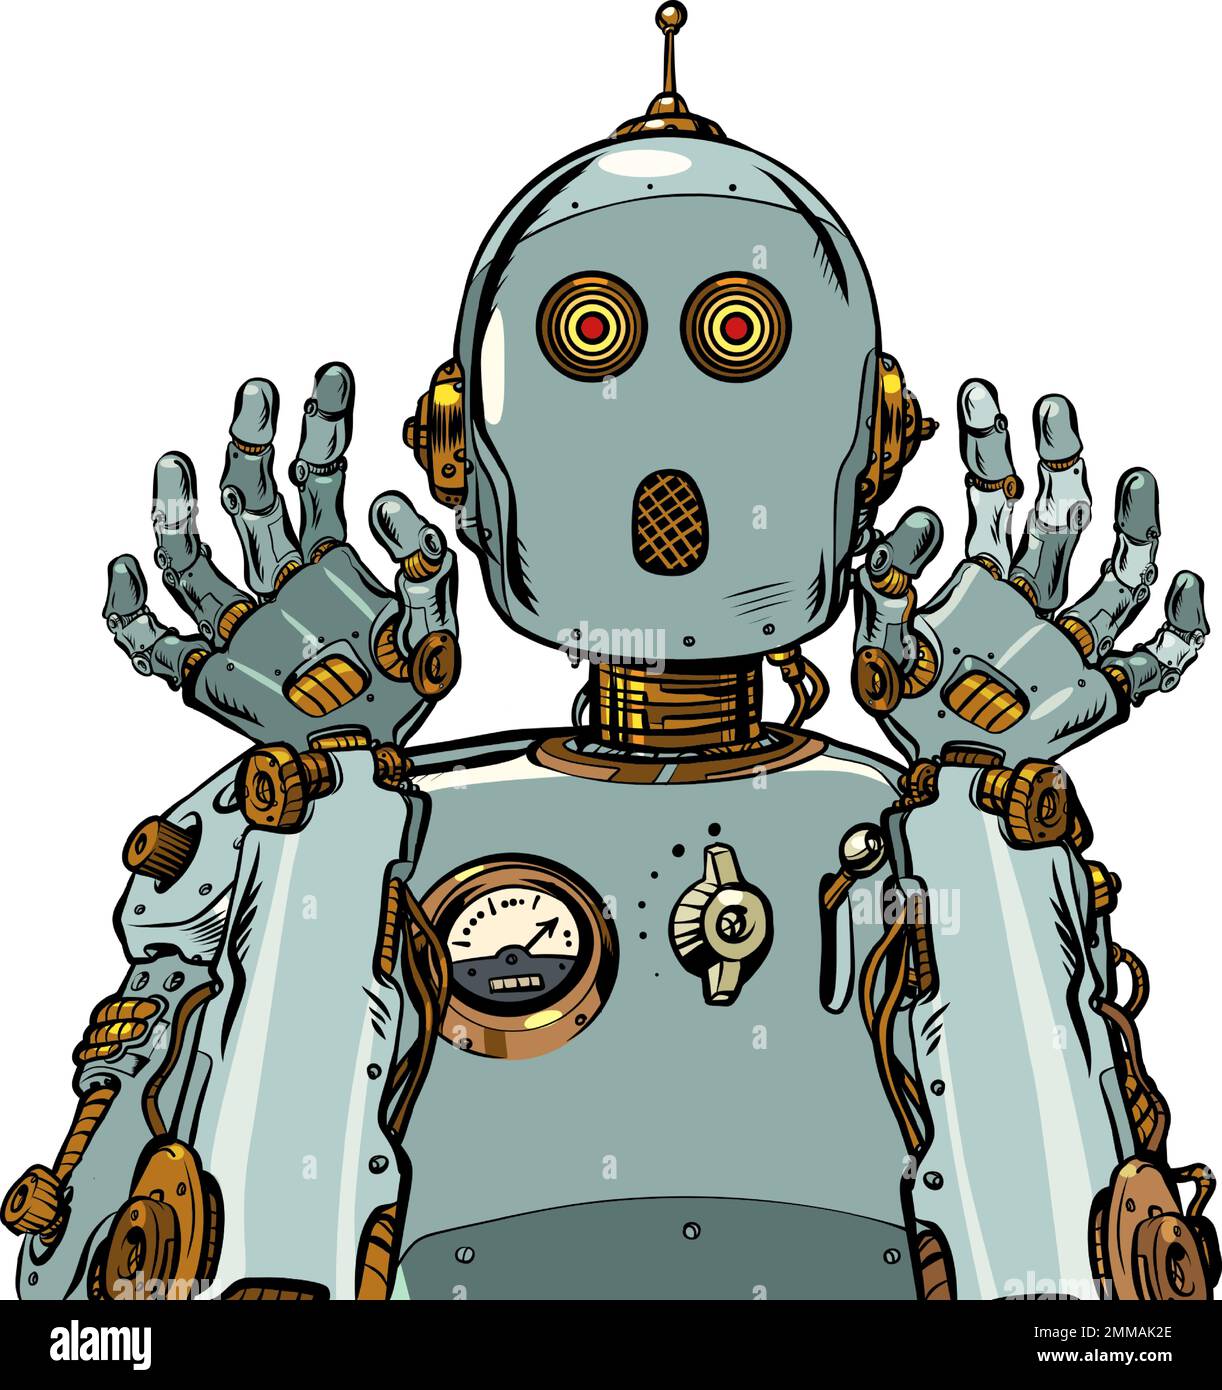 Der verängstigte Roboter hob überraschend die Hände. Emotionen der künstlichen Intelligenz. Retro-Mechanismus Stock Vektor